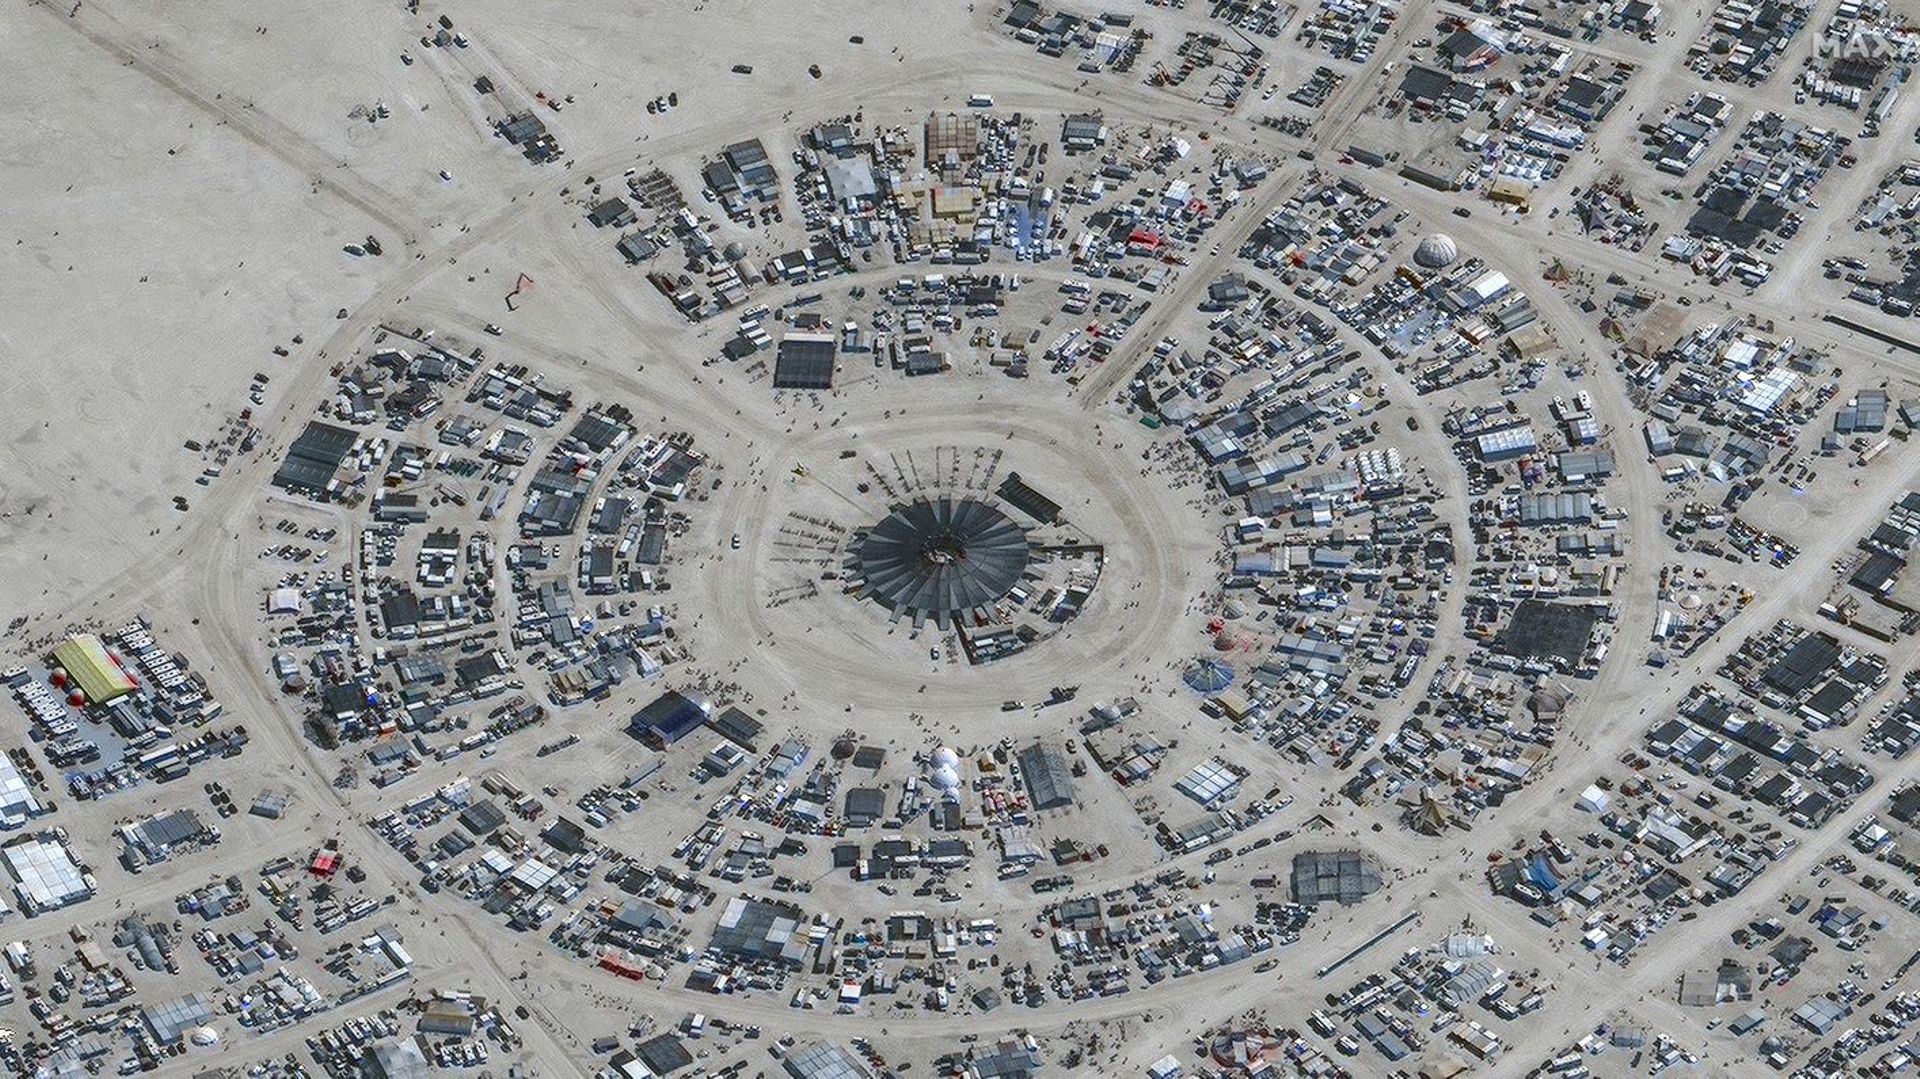 Stati Uniti: i partecipanti al festival Burning Man intrappolati nel deserto a causa della pioggia, esortano i partecipanti a razionare acqua e cibo